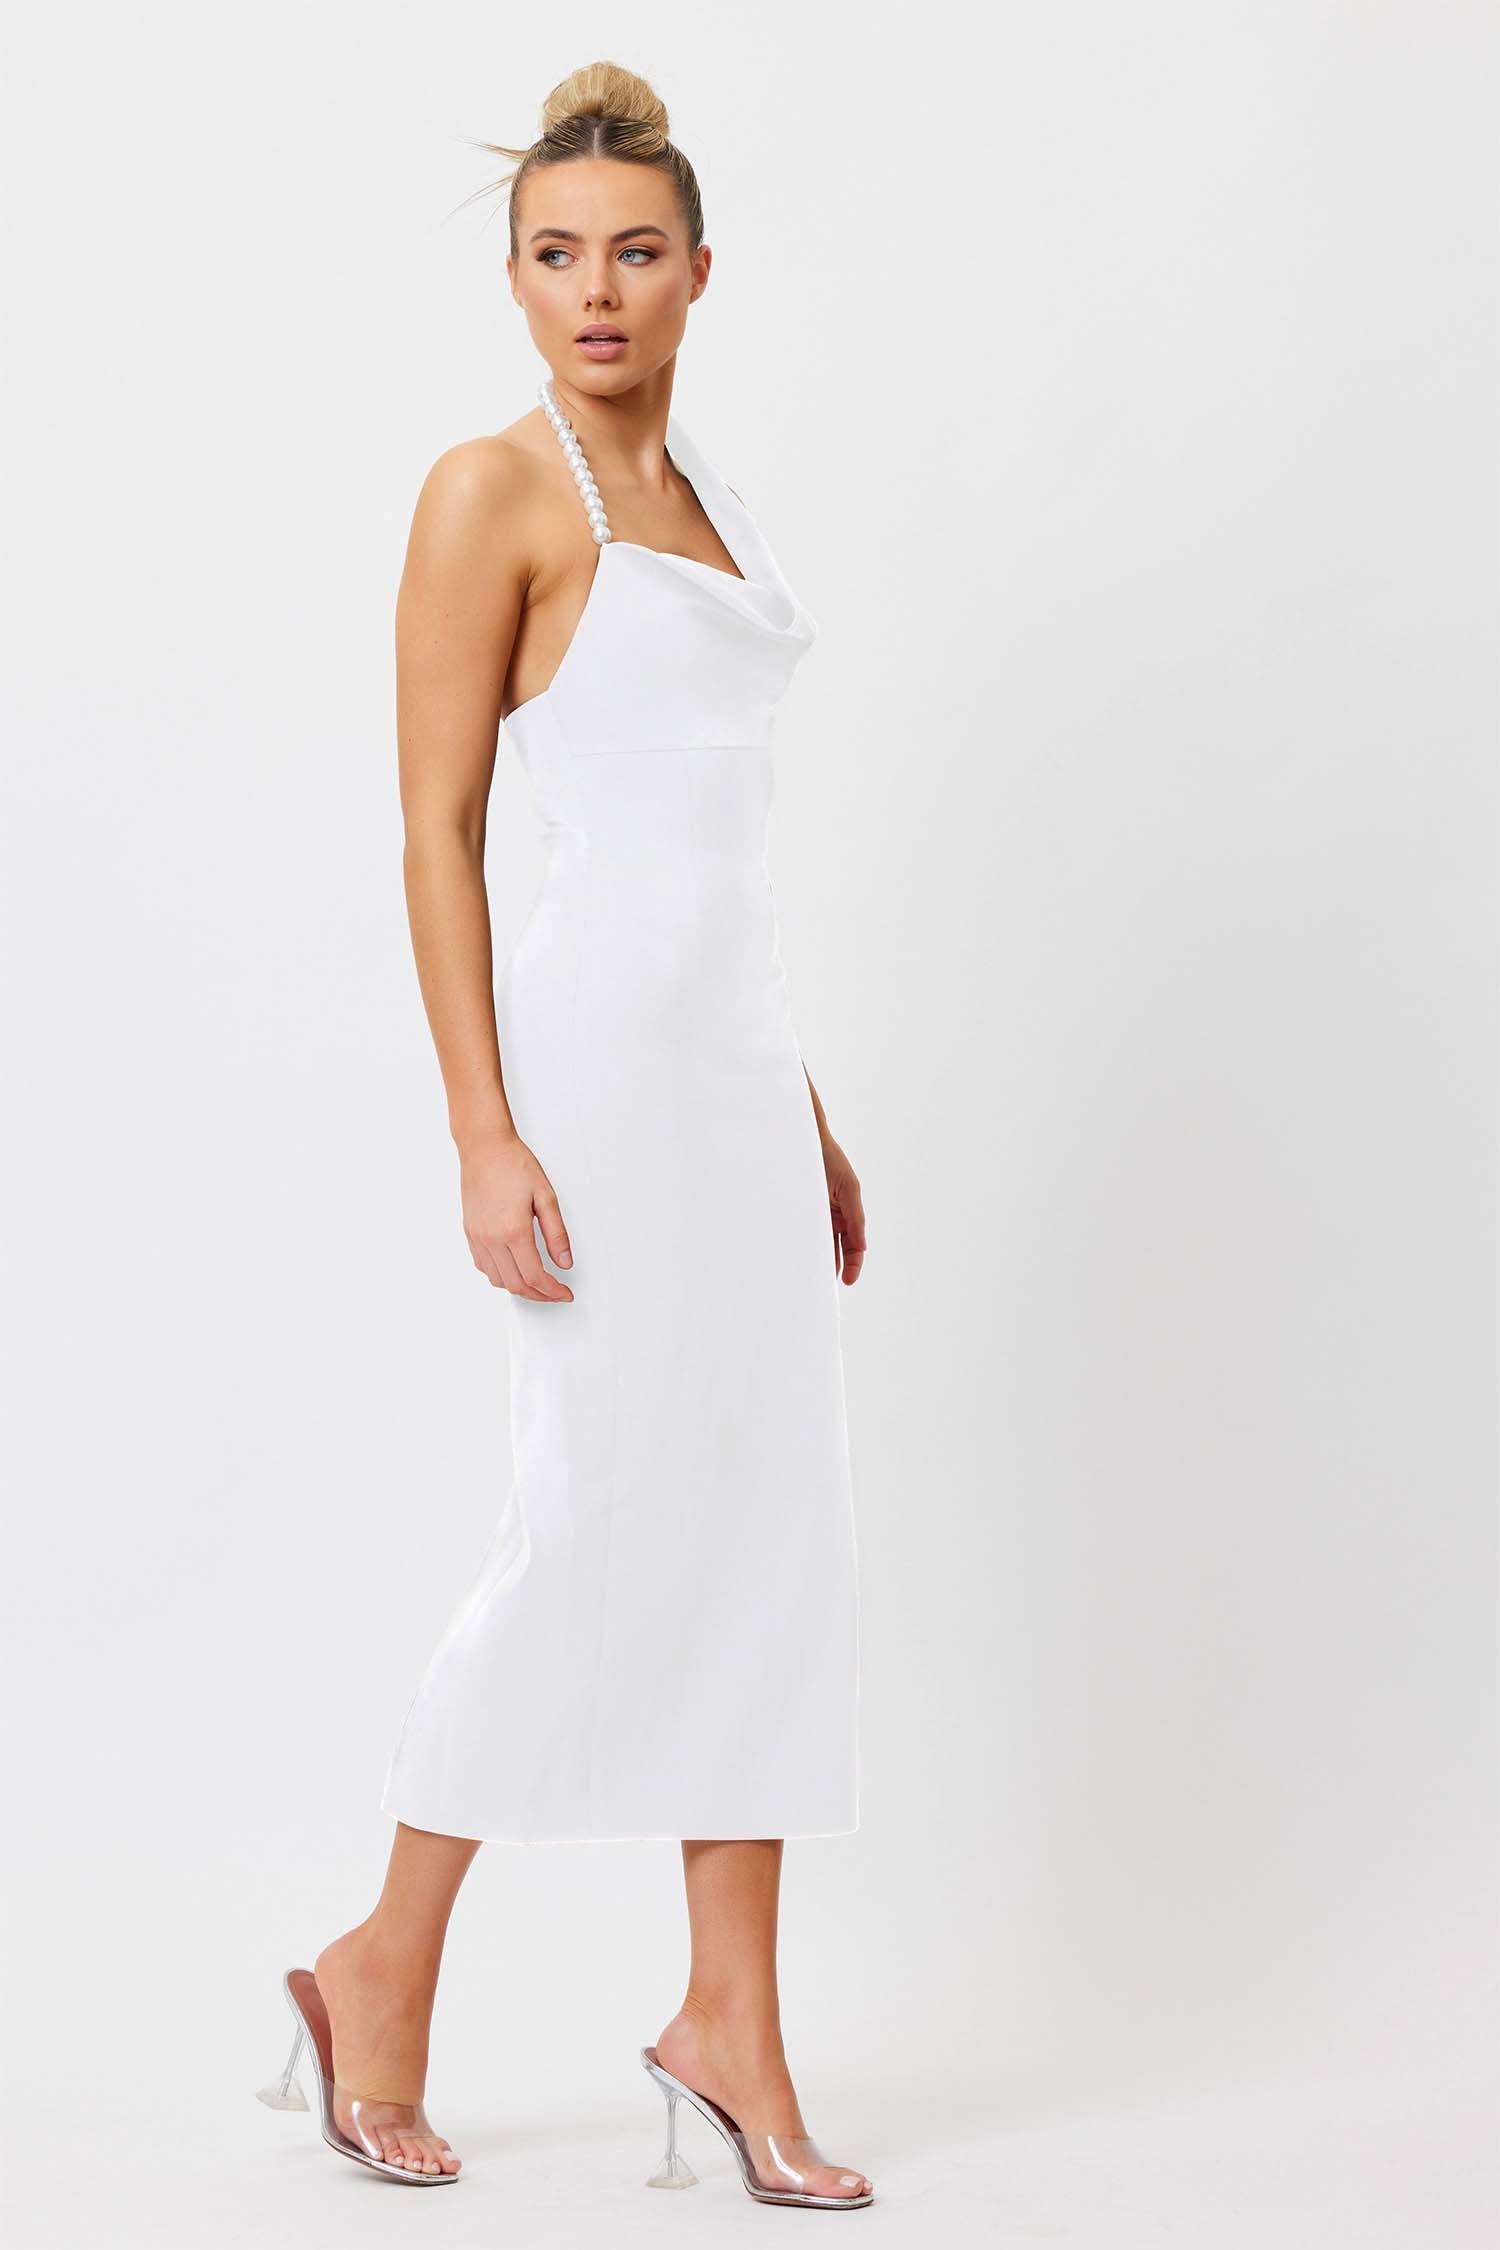 Mia Pearl Midi Dress - White